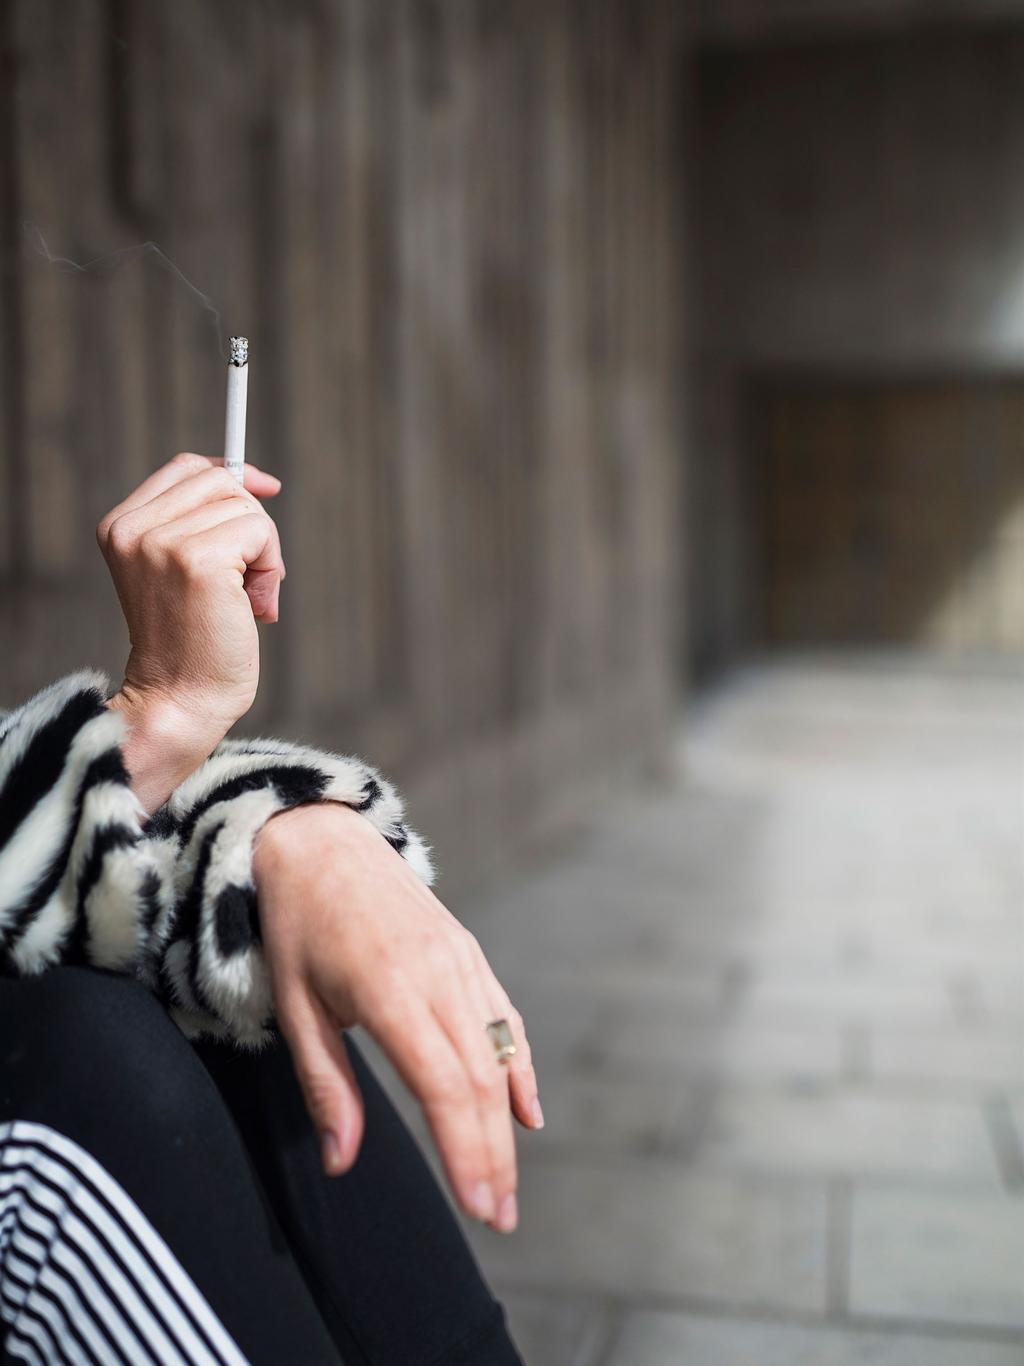 Foto Scandinav 108 Cancerfondsrapporten 2018 Prevention 109 Regeringen avstår exponeringsförbud Grönt ljus för nyrekrytering av unga rökare Det enda sättet att stoppa nyrekryteringen av rökare är att